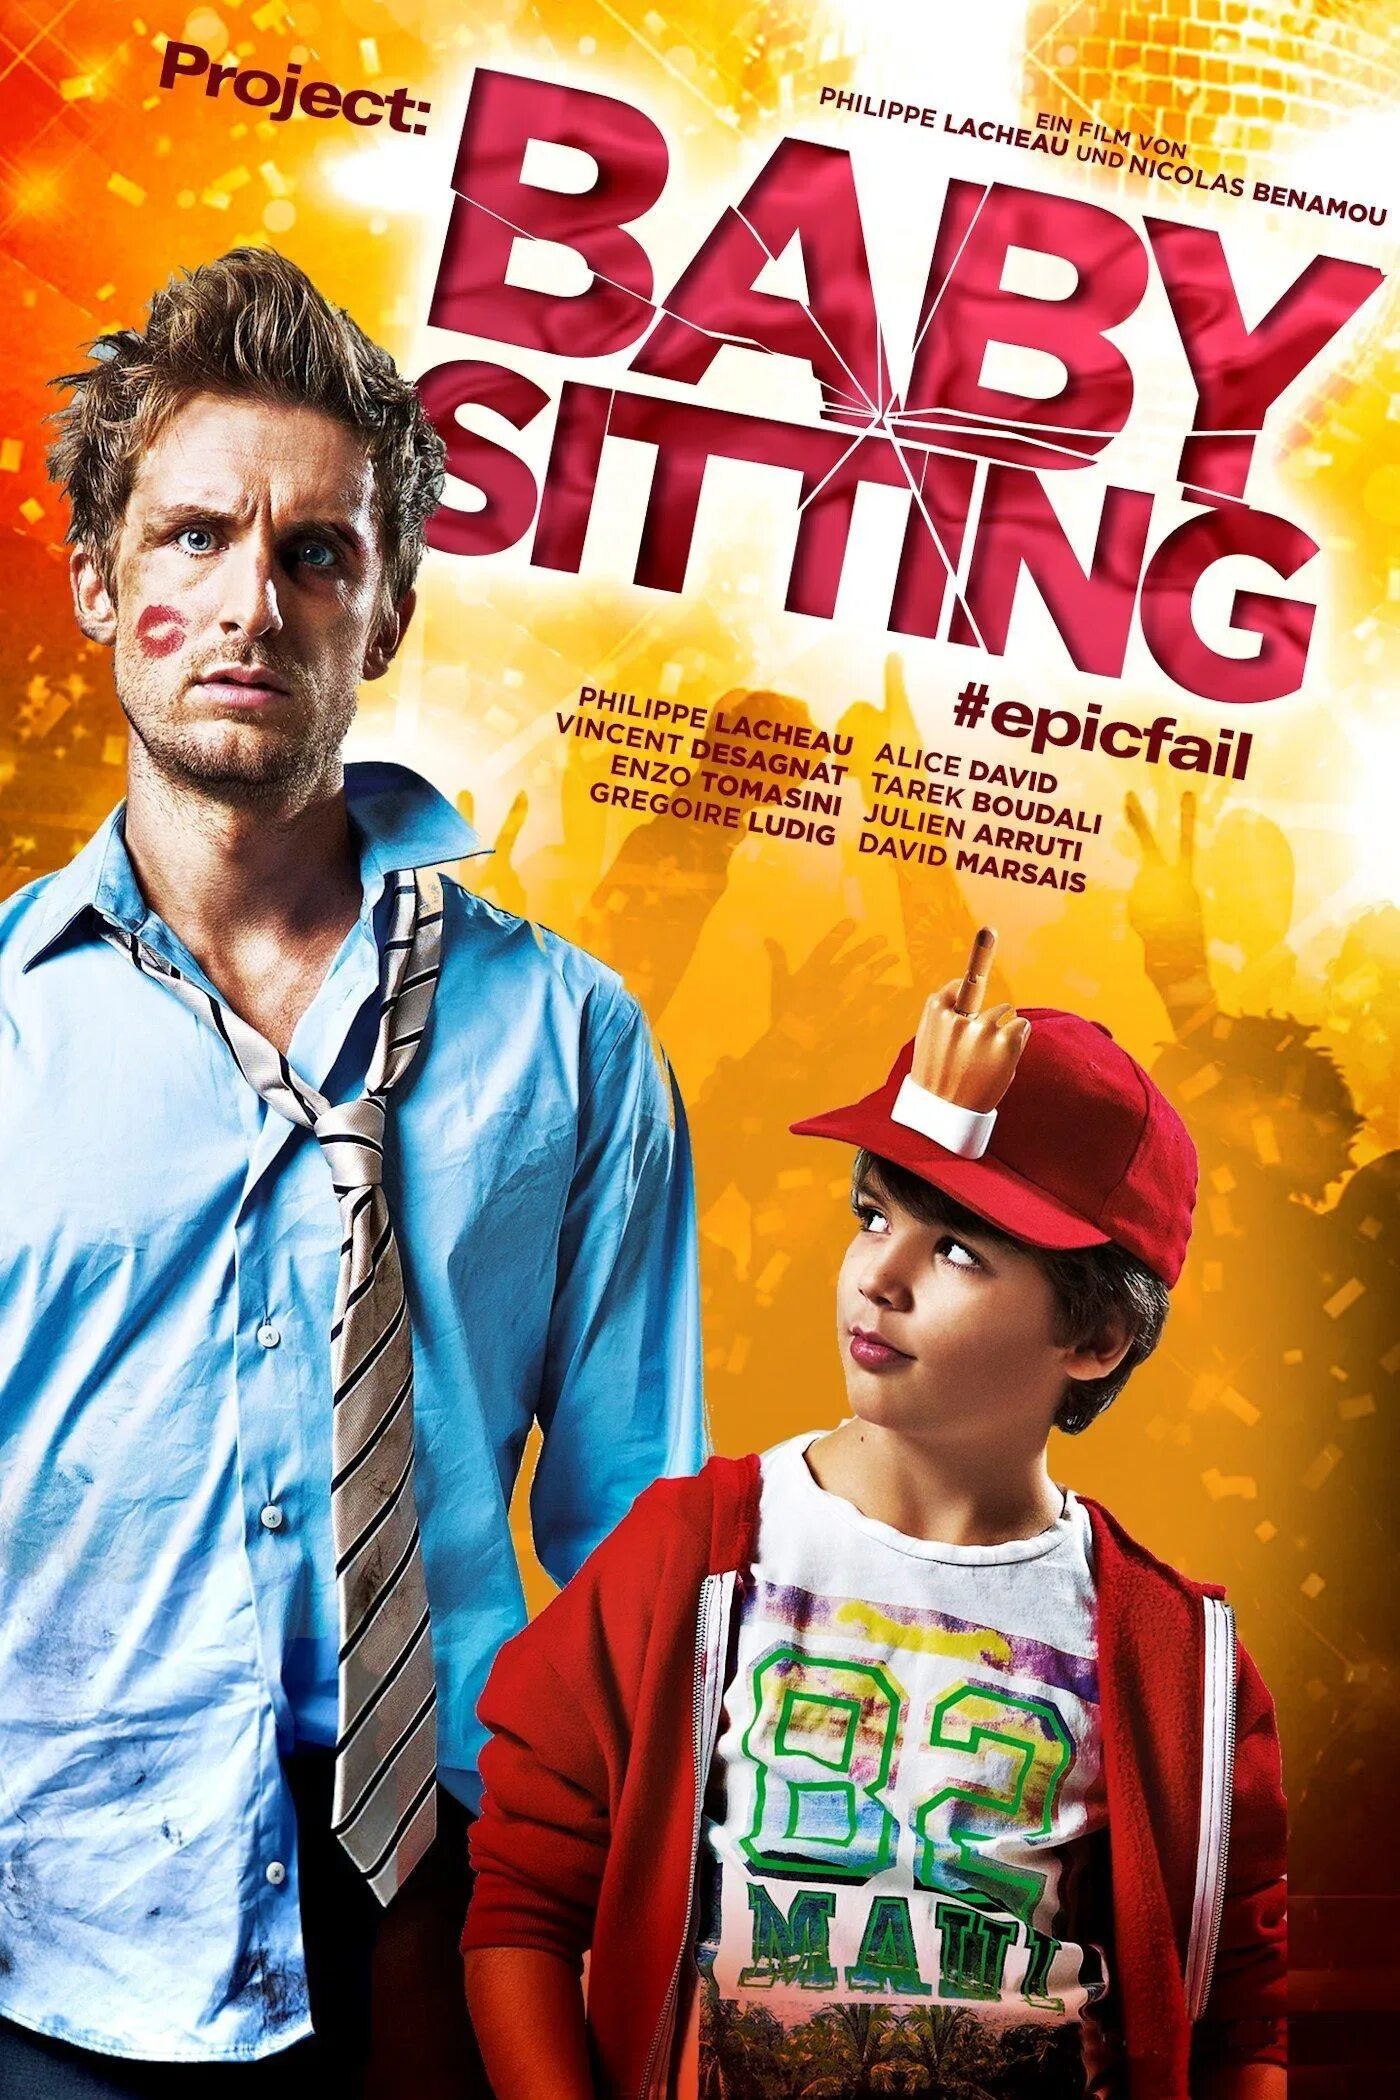 Комедия нянь. Супернянь Постер. Superнянь (2014) (Babysitting). Супернянь обложка.